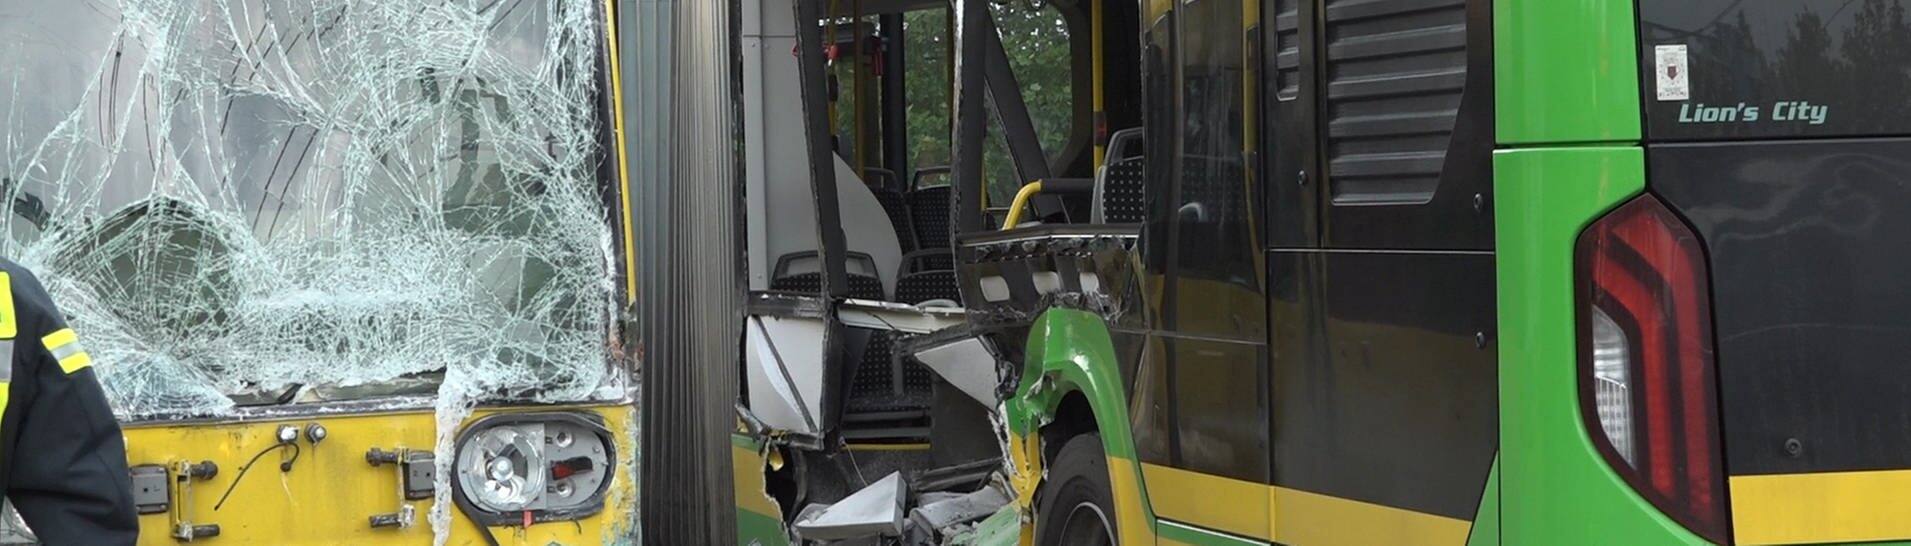 Die Straßenbahn links im Bild ist durch den Zusammenstoß mit einem Bus beschädigt. Rechts sieht man den Bus mit einer starken Delle, bei der die Scheiben herausgebrochen sind.  (Foto: dpa Bildfunk, picture alliance/dpa | Markus Gayk)